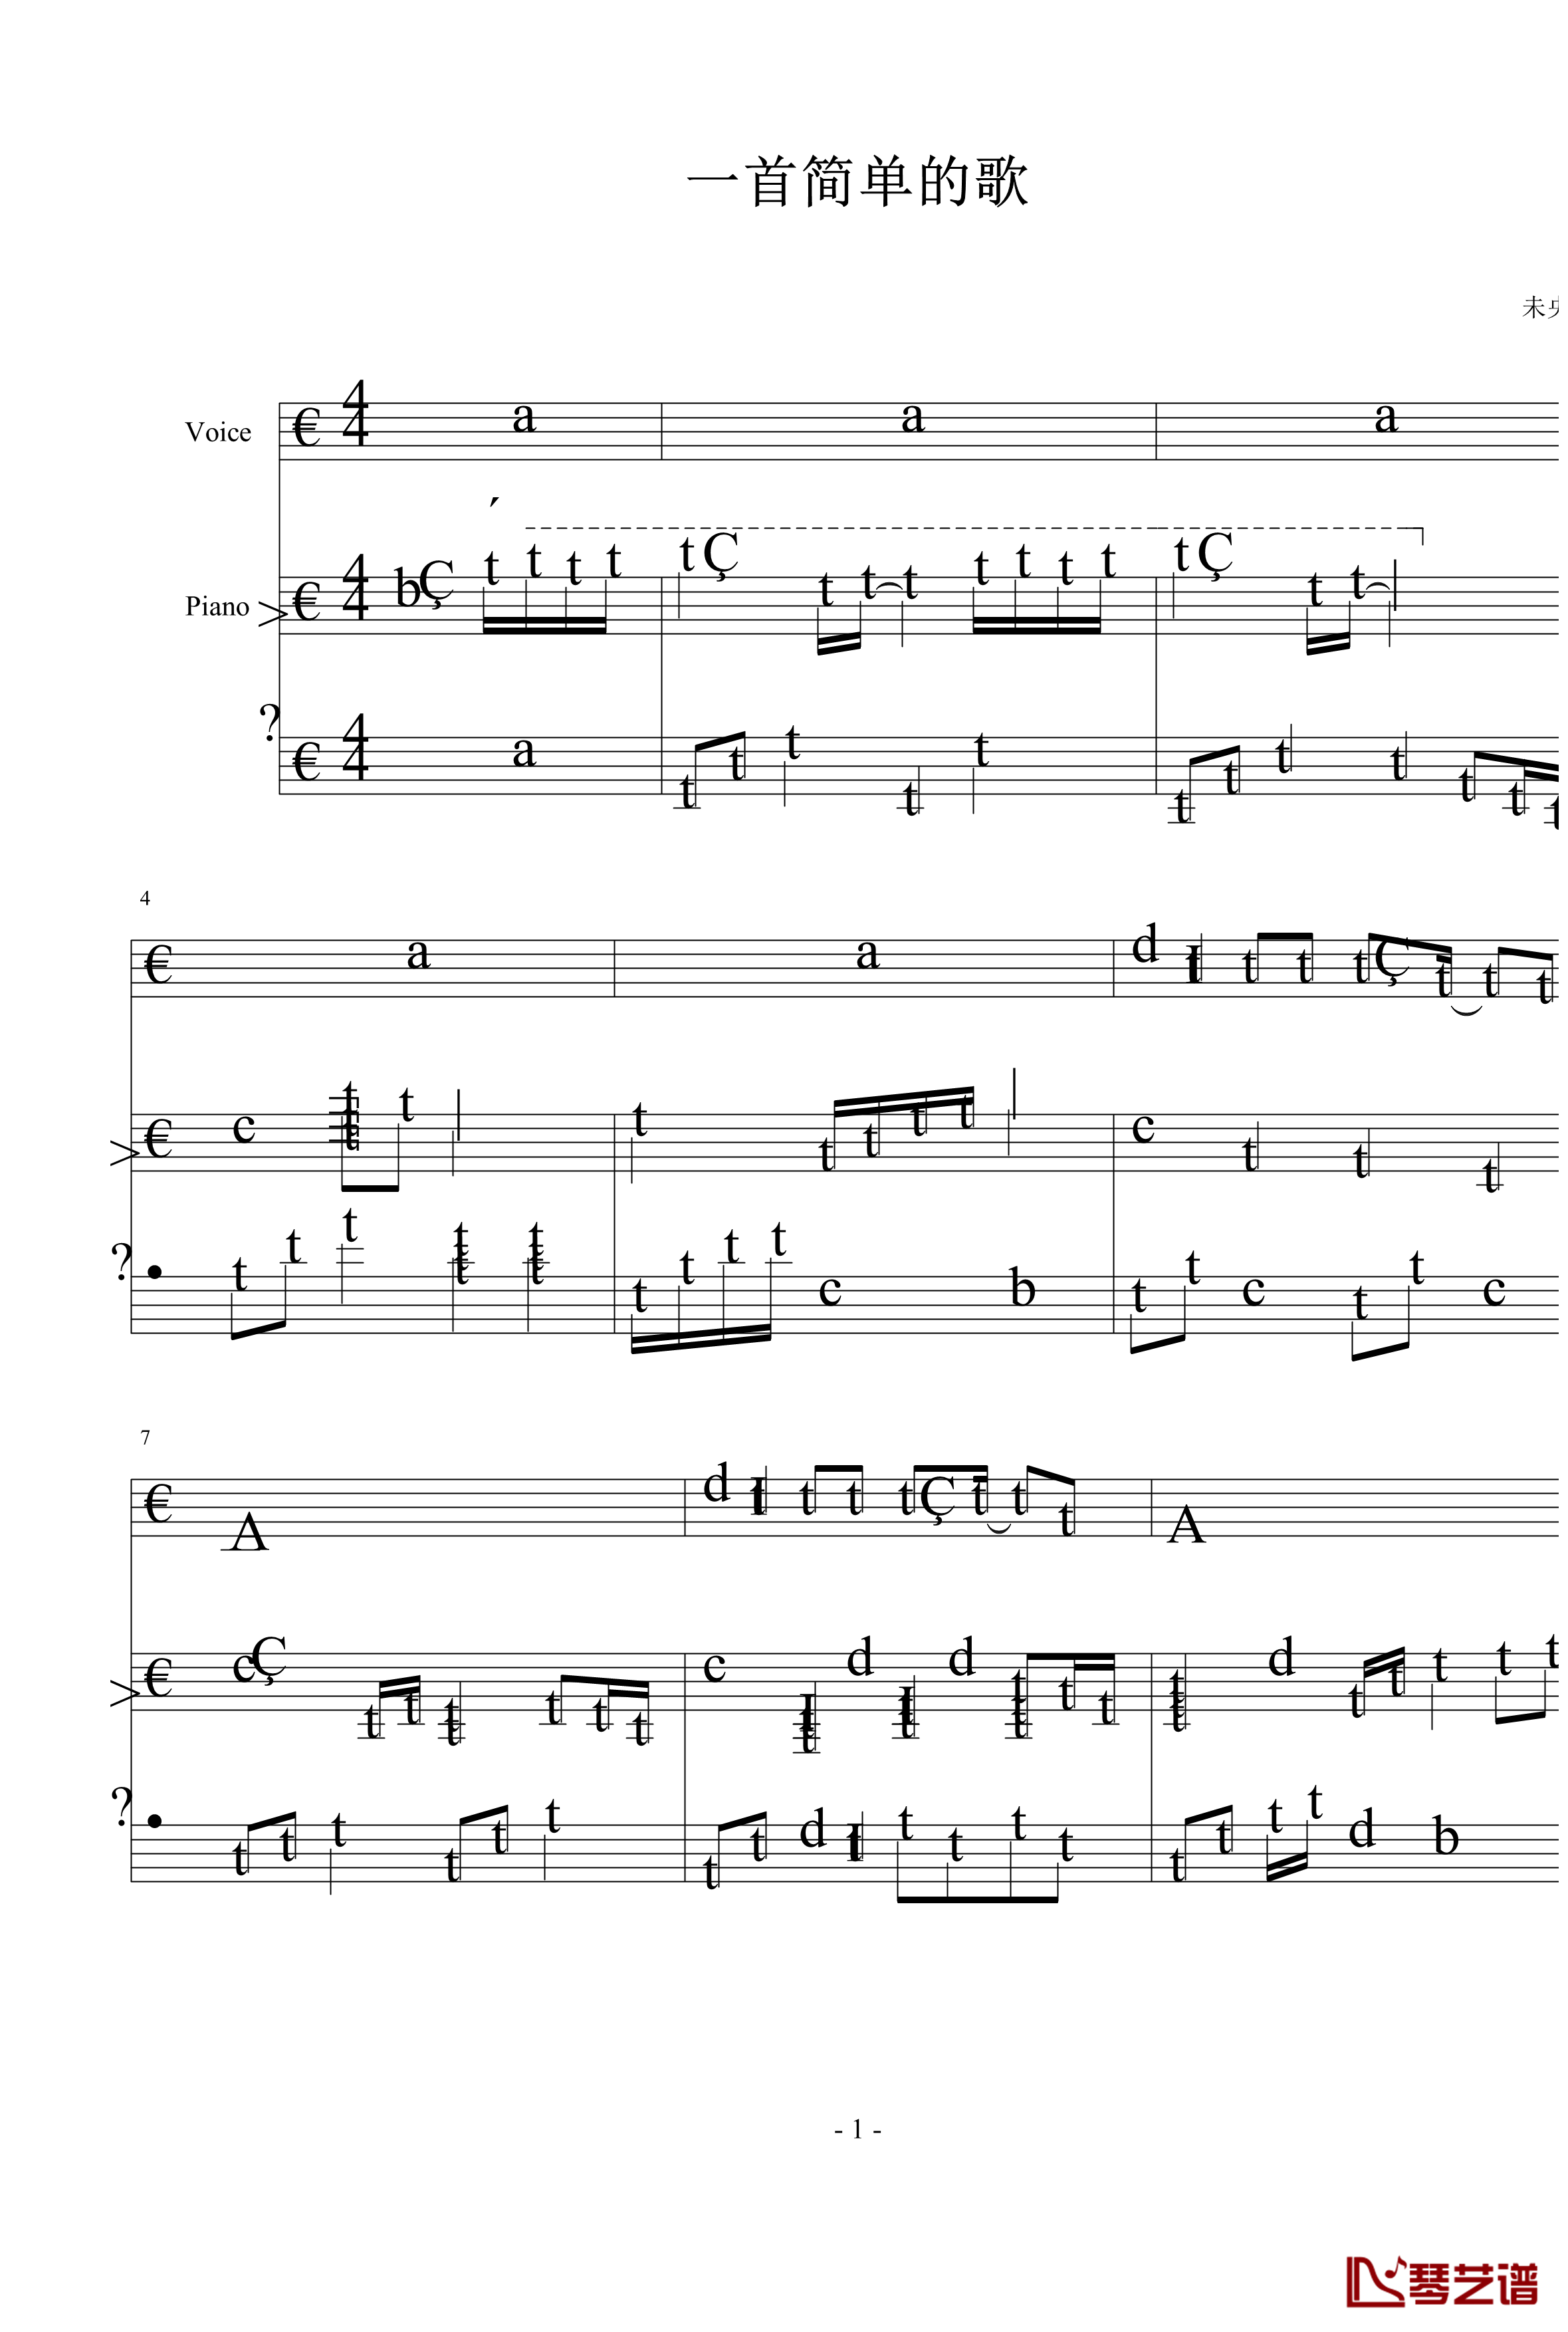 一首简单的歌钢琴谱-未央歌1